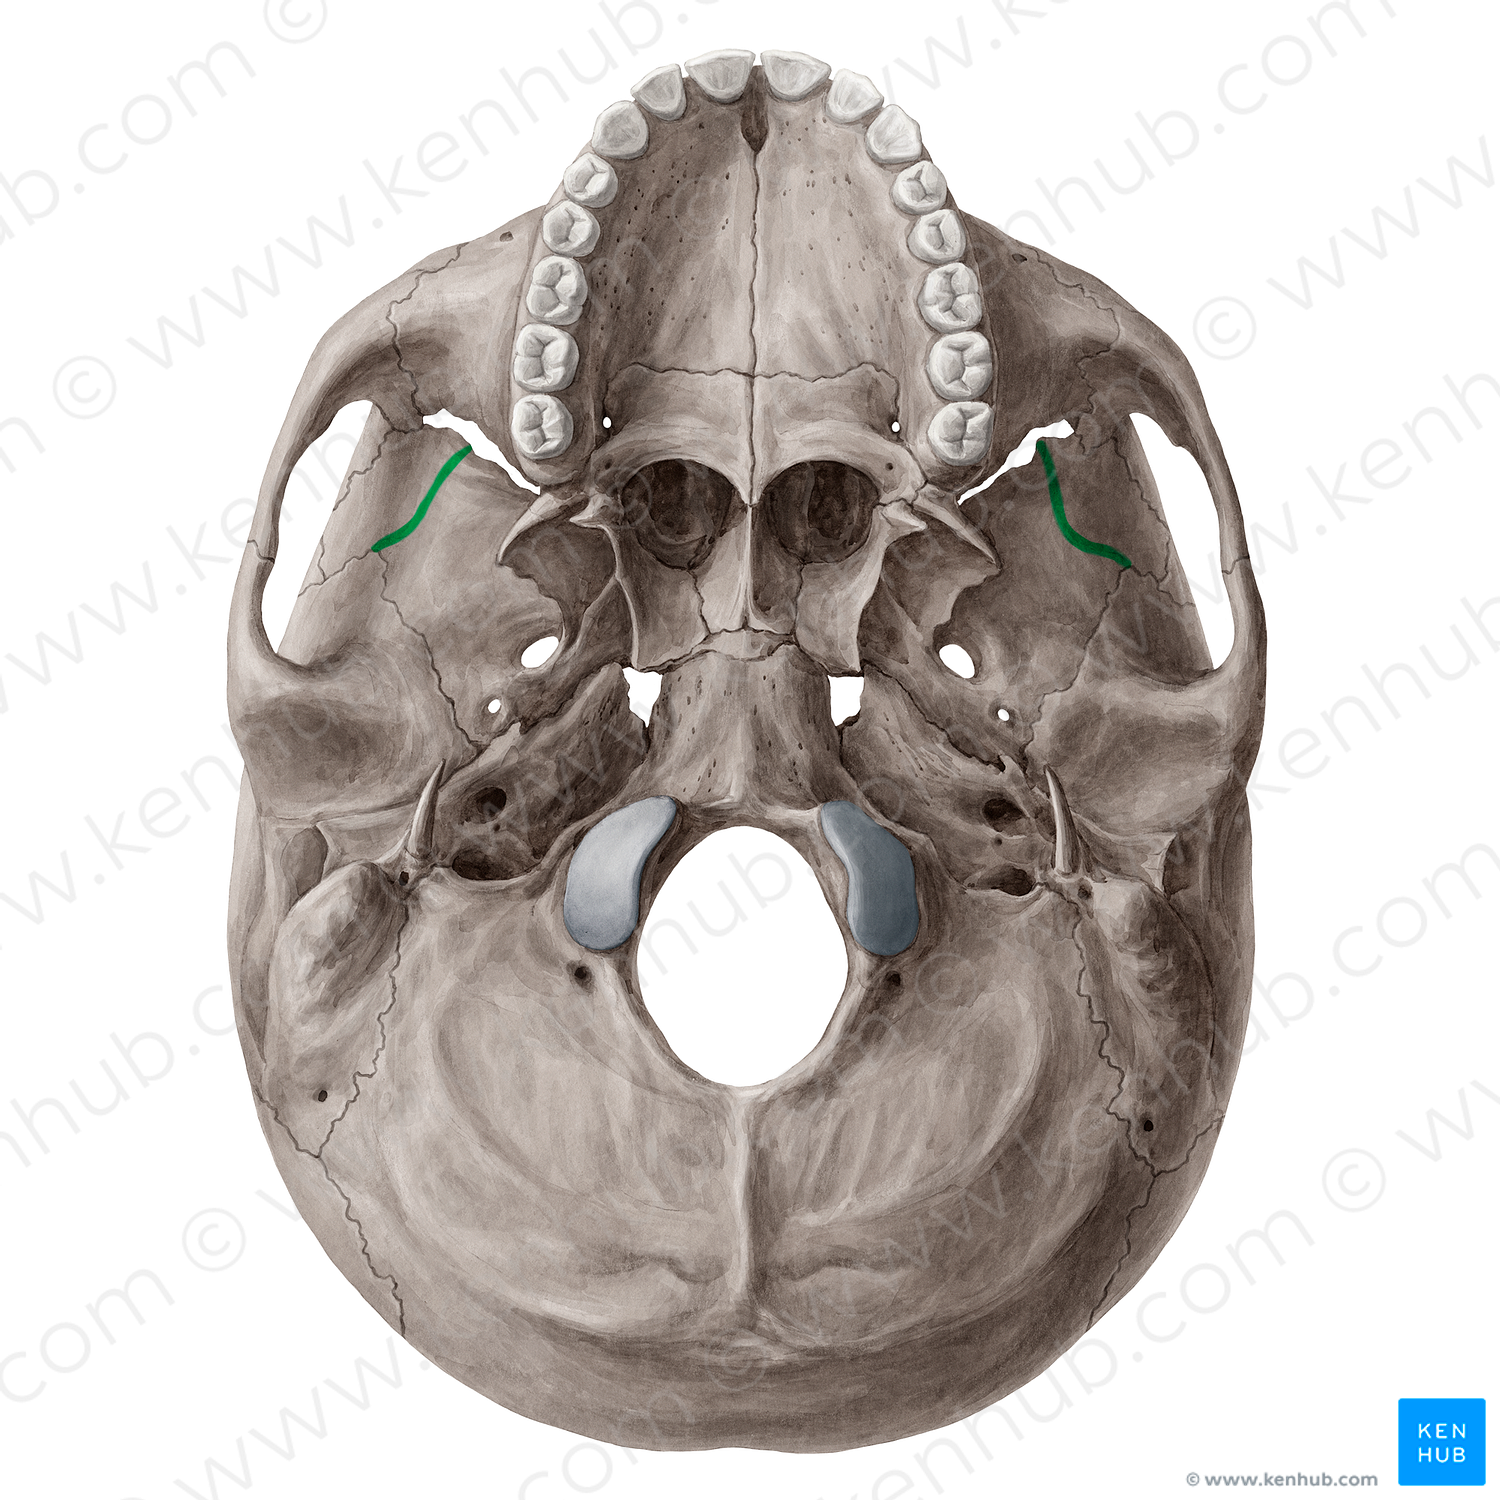 Infratemporal crest of sphenoid bone (#21528)